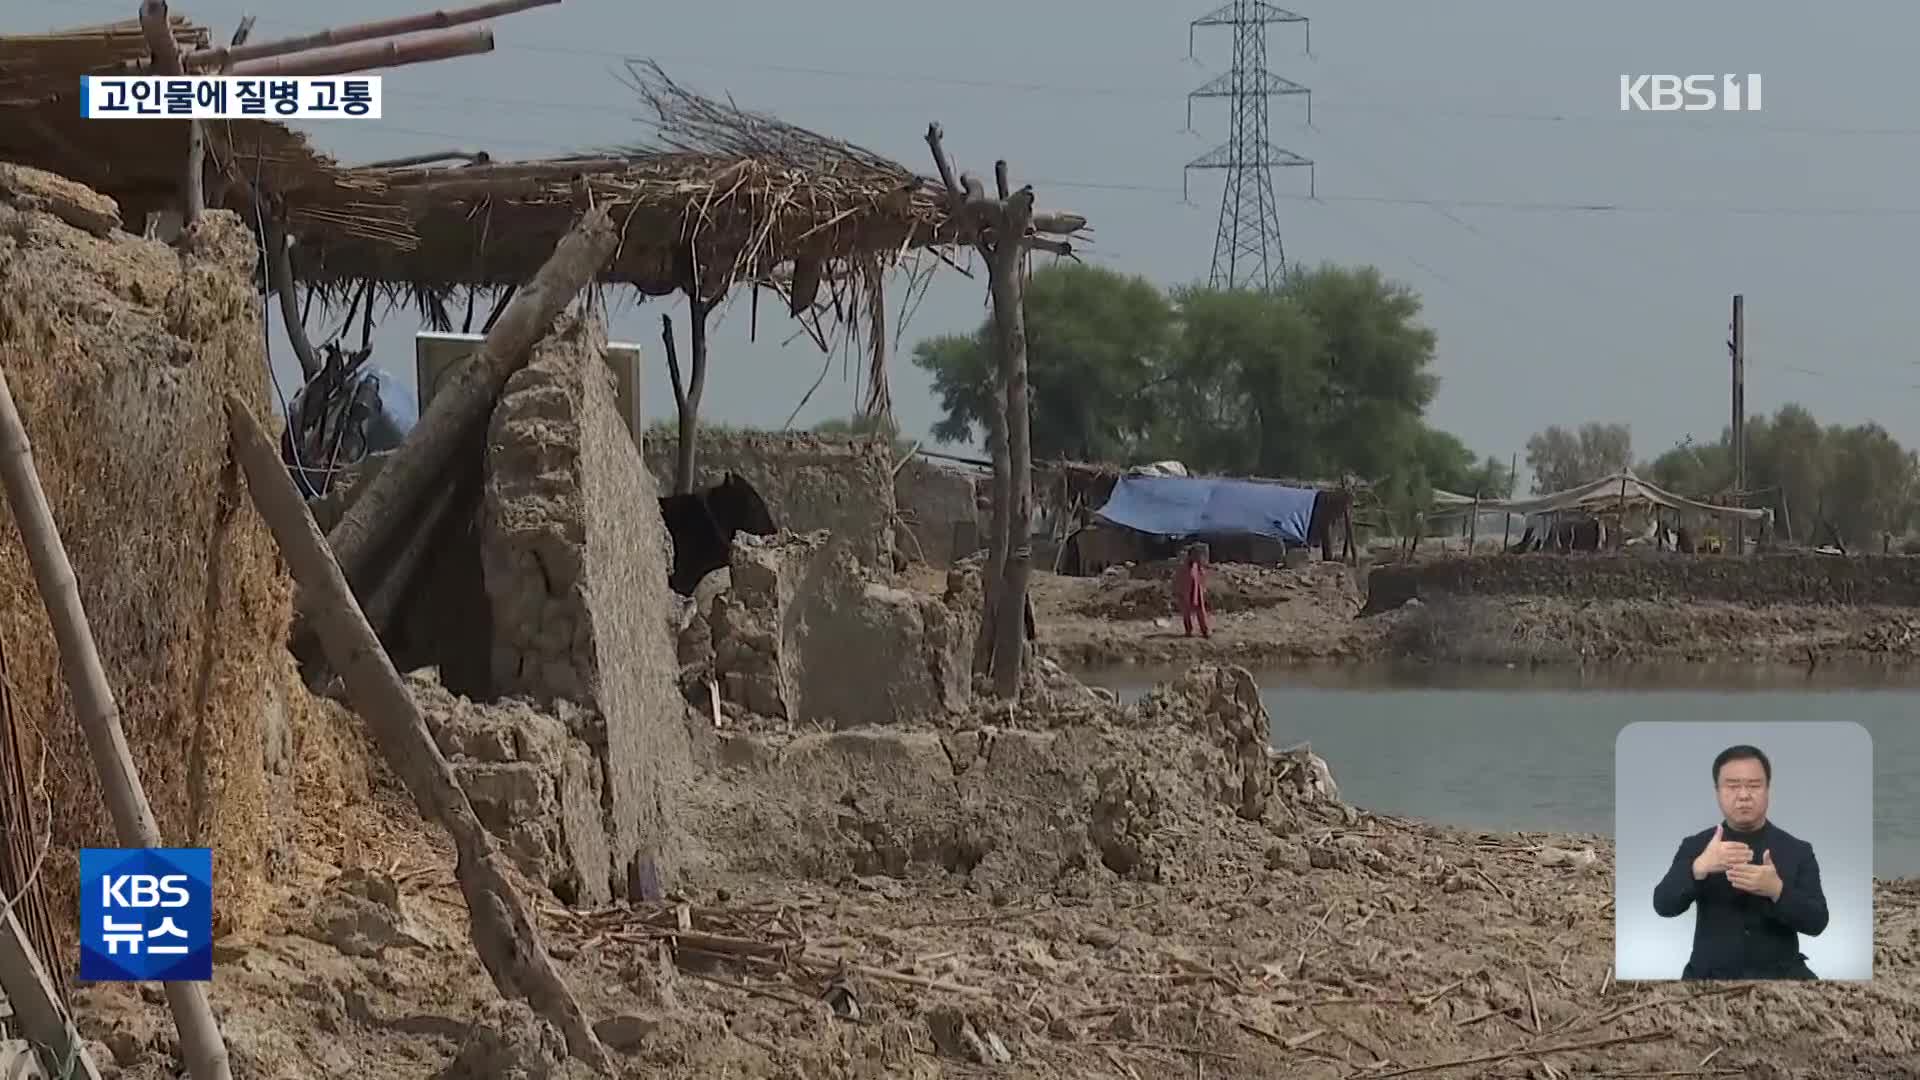 파키스탄 한 달째 물이 그대로…질병 심각, 지원 시급